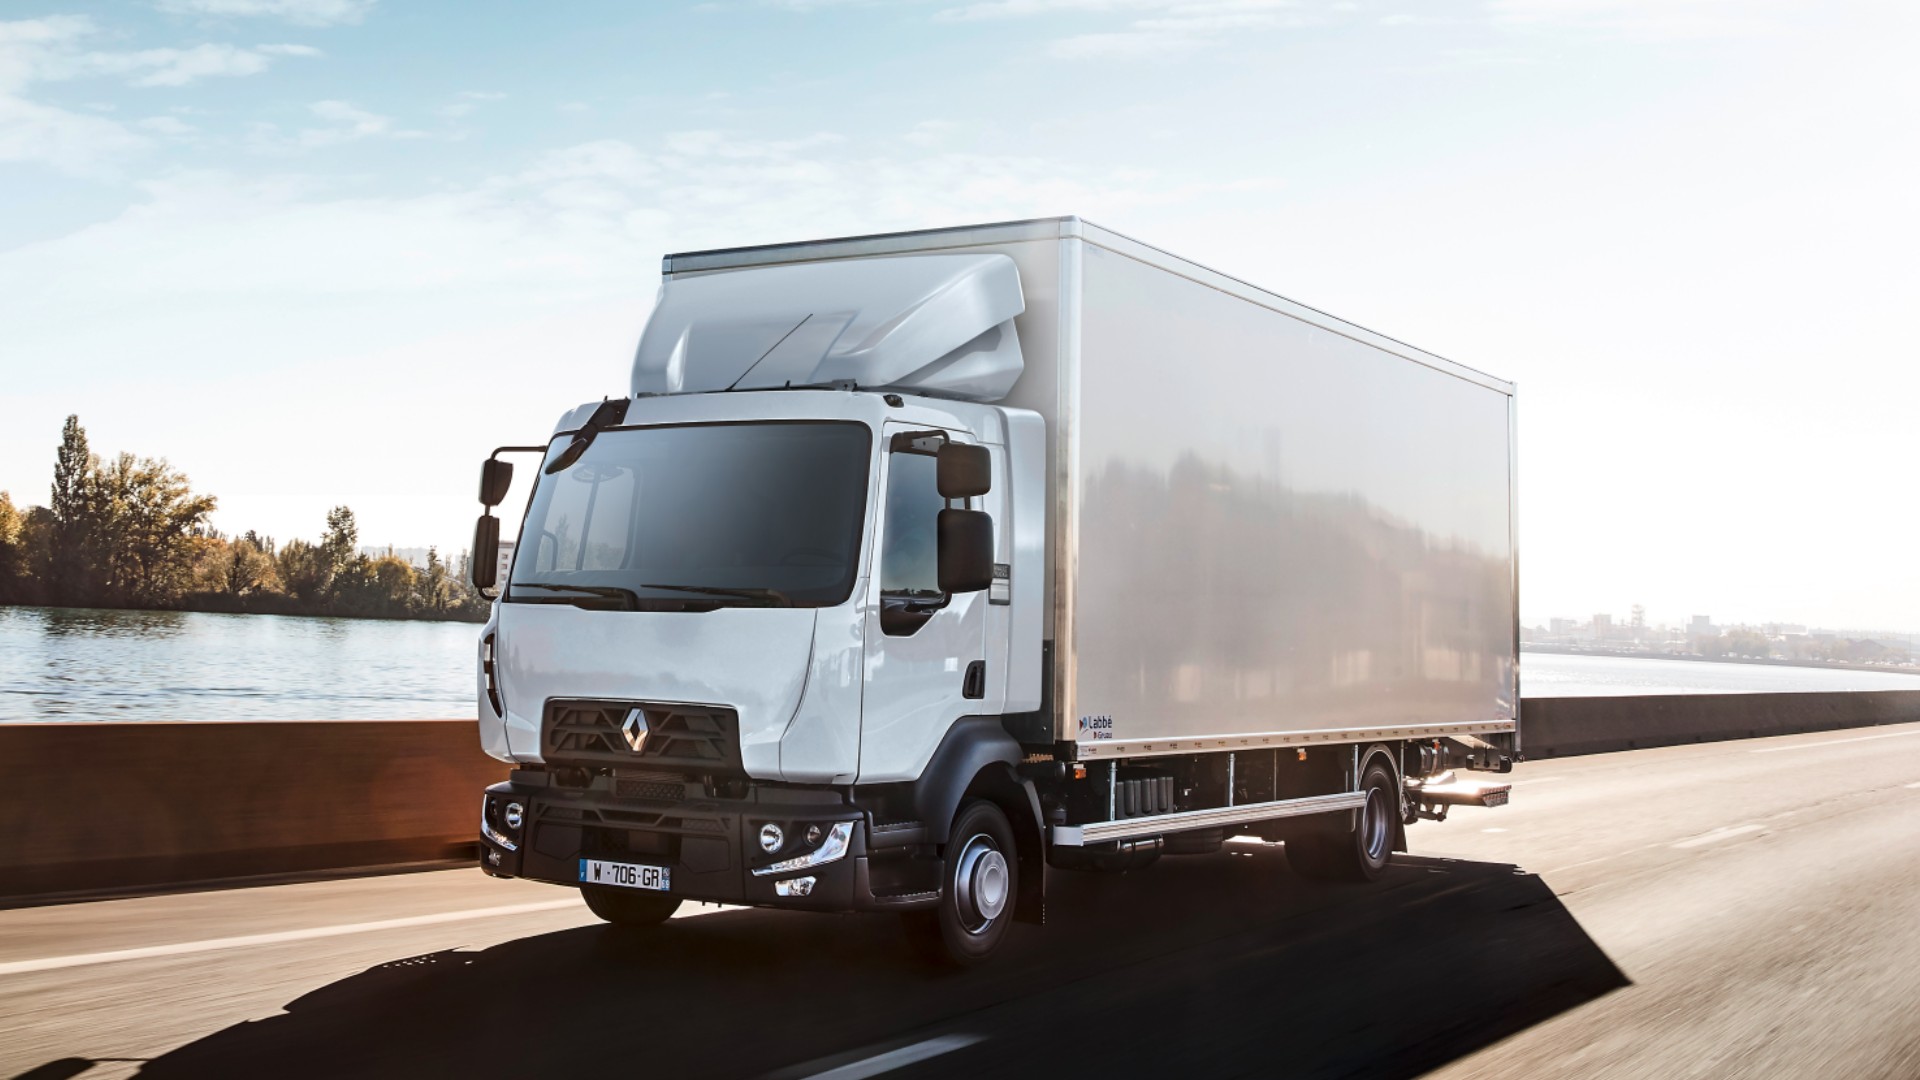 Η Renault Trucks ολοκλήρωσε πρόσφατα τη μετατροπή ενός diesel φορτηγού 12 τόνων, σε ένα πλήρως ηλεκτρικό όχημα μπαταρίας (BEV).